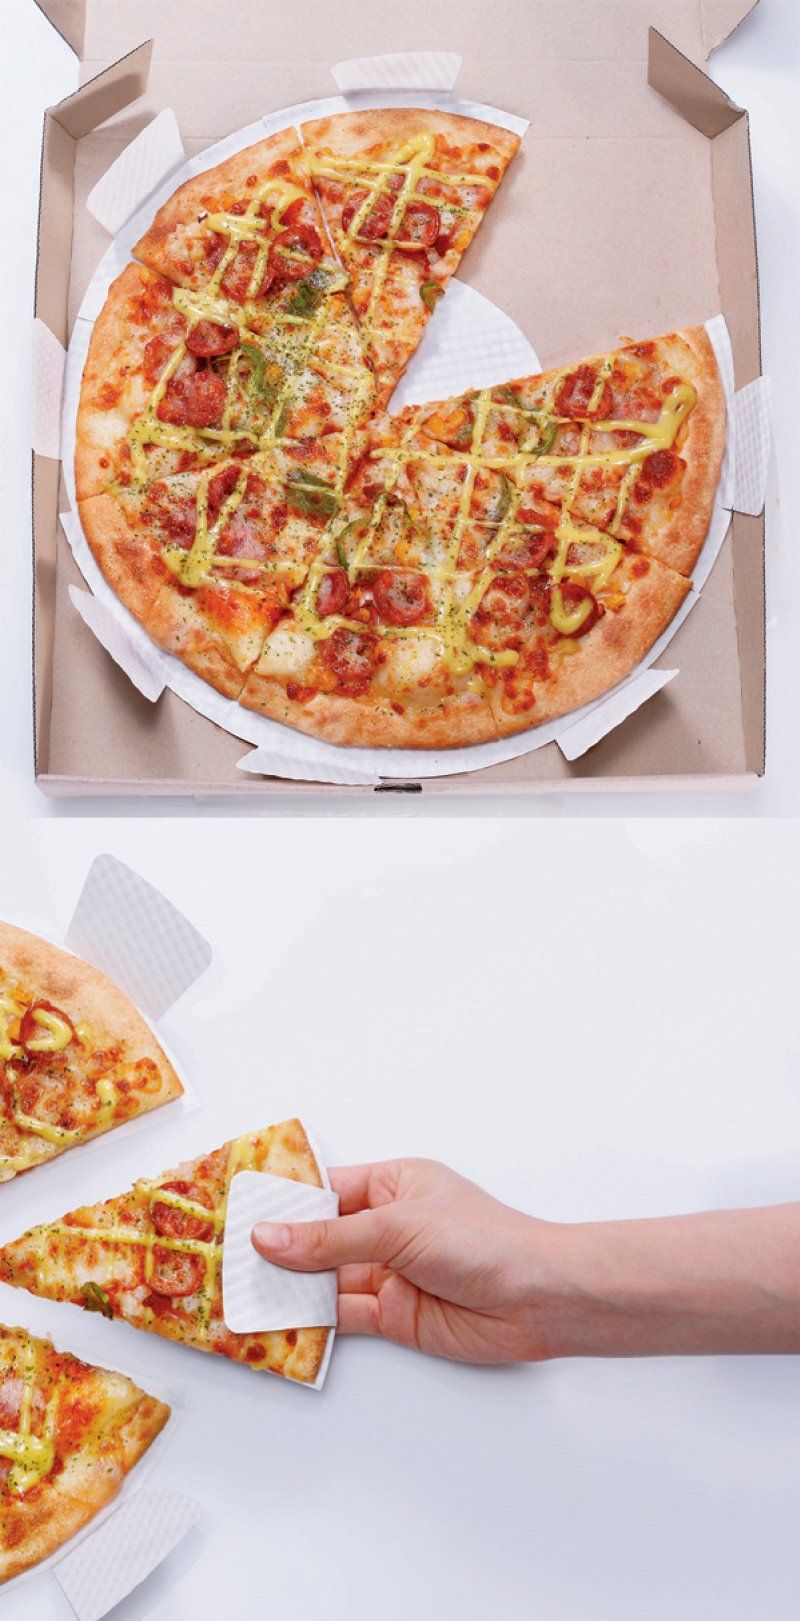 Làm thế nào để ăn pizza cho thanh lịch và sạch sẽ nhỉ? Thêm một tờ giấy lót với miếng lót tay thế này sẽ giúp bạn dễ dàng ăn pizza ở mọi nơi một cách sạch sẽ và gọn gàng nhất.